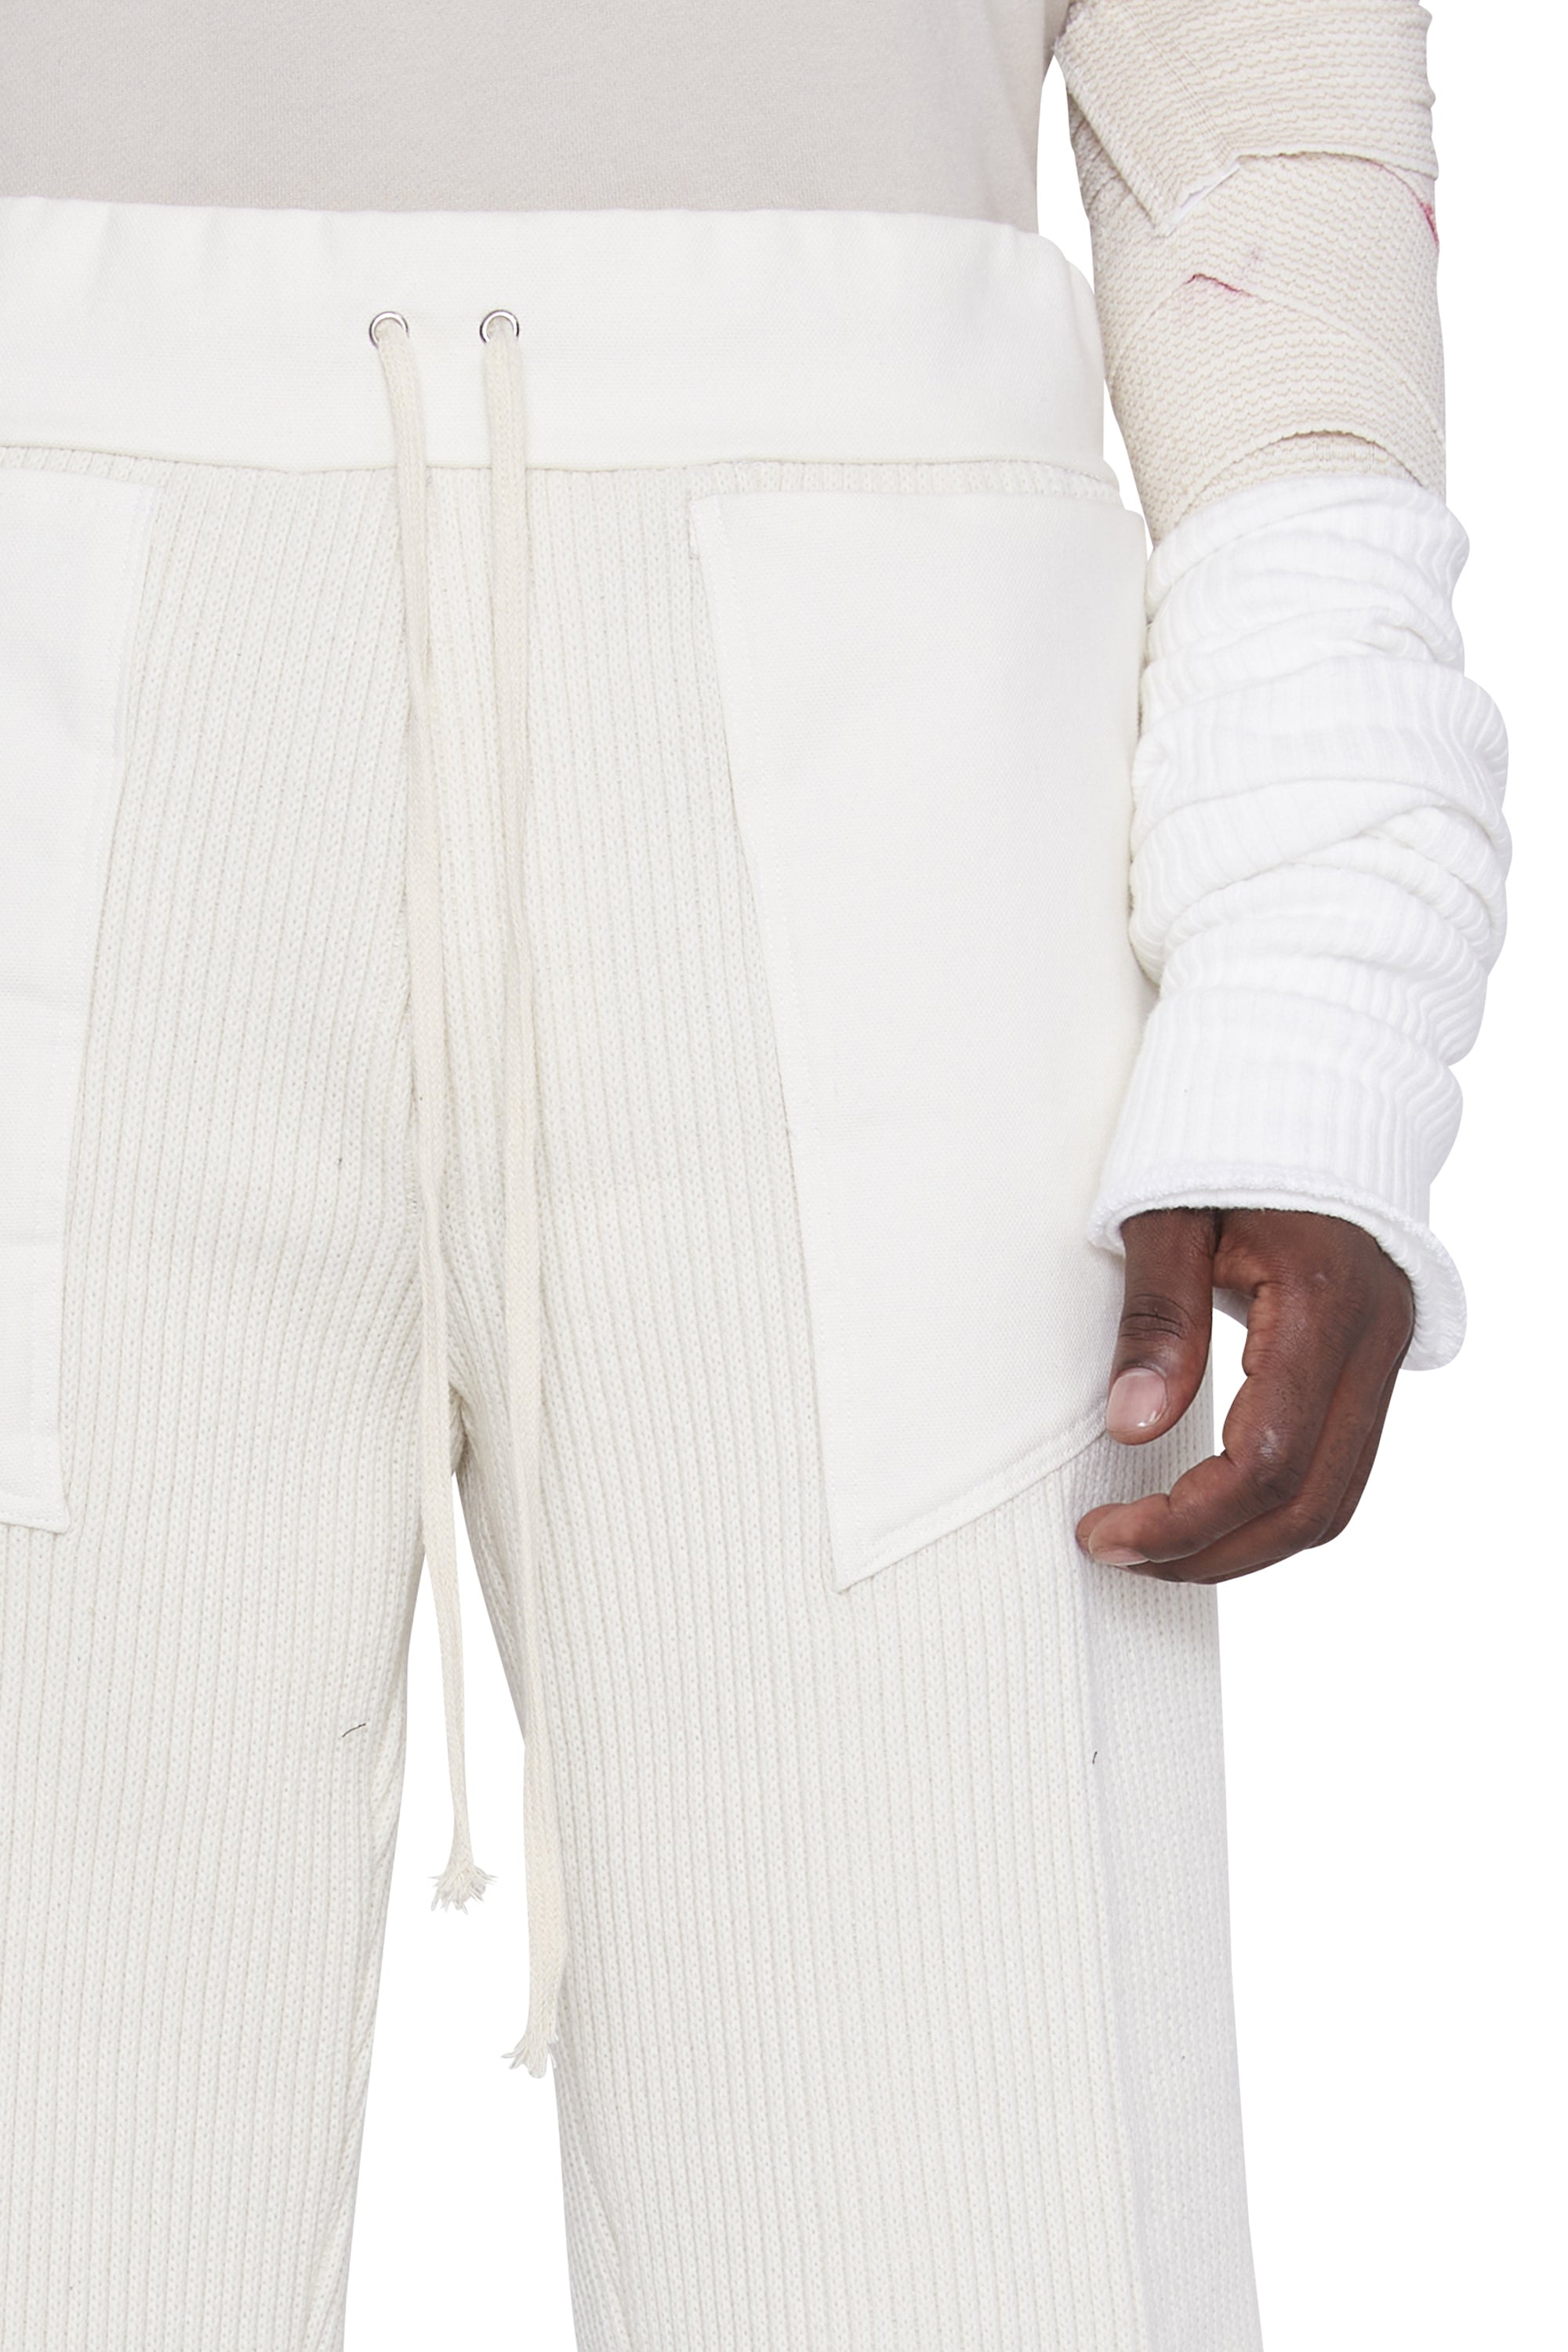 Ribbed Canvas Paneled Shorts (White)